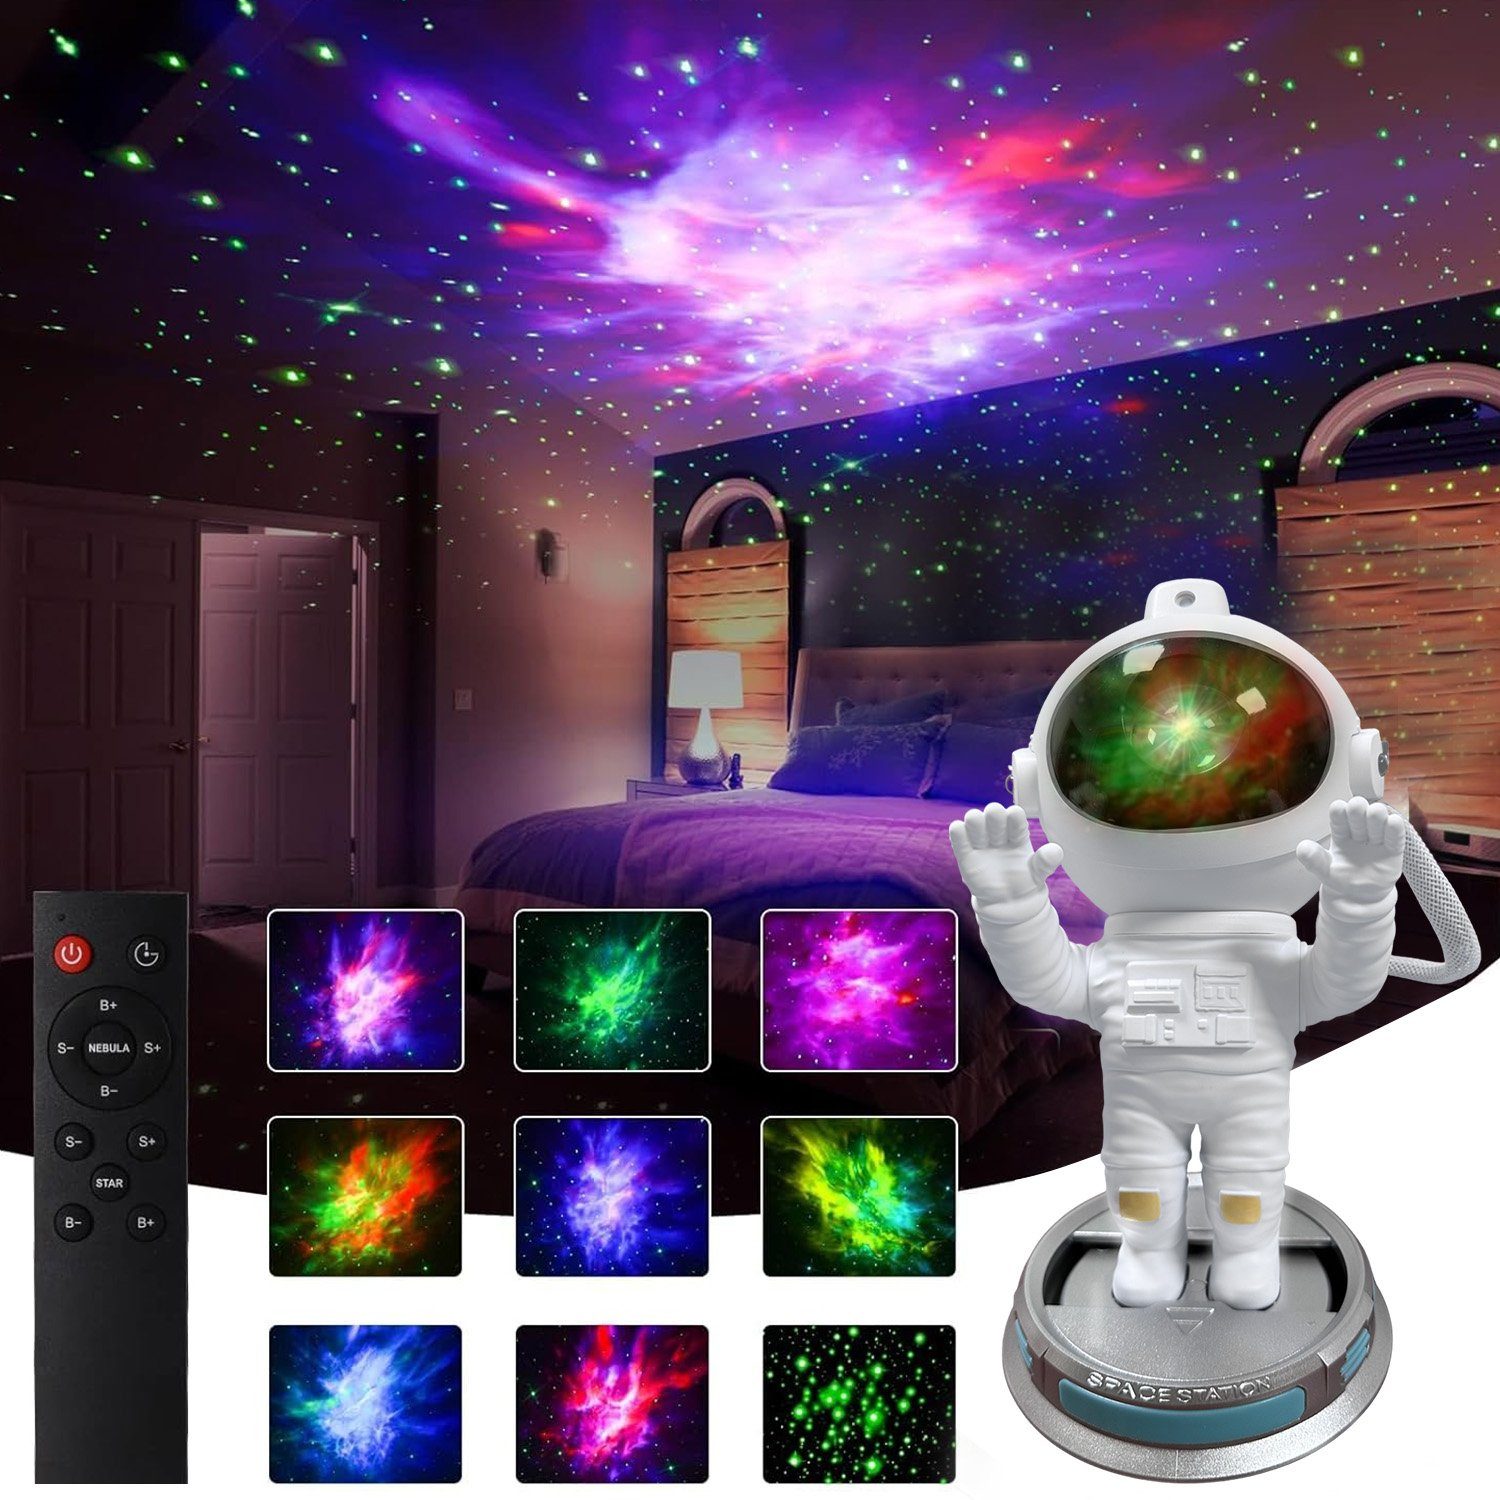 Sunicol LED Nachtlicht Astronaut Galaxy Projektor, 360° verstellbar, Timer, Fernbedienung, Rot, Blau, Grün, Grünes, für Baby Erwachsene Schlafzimmer RGB